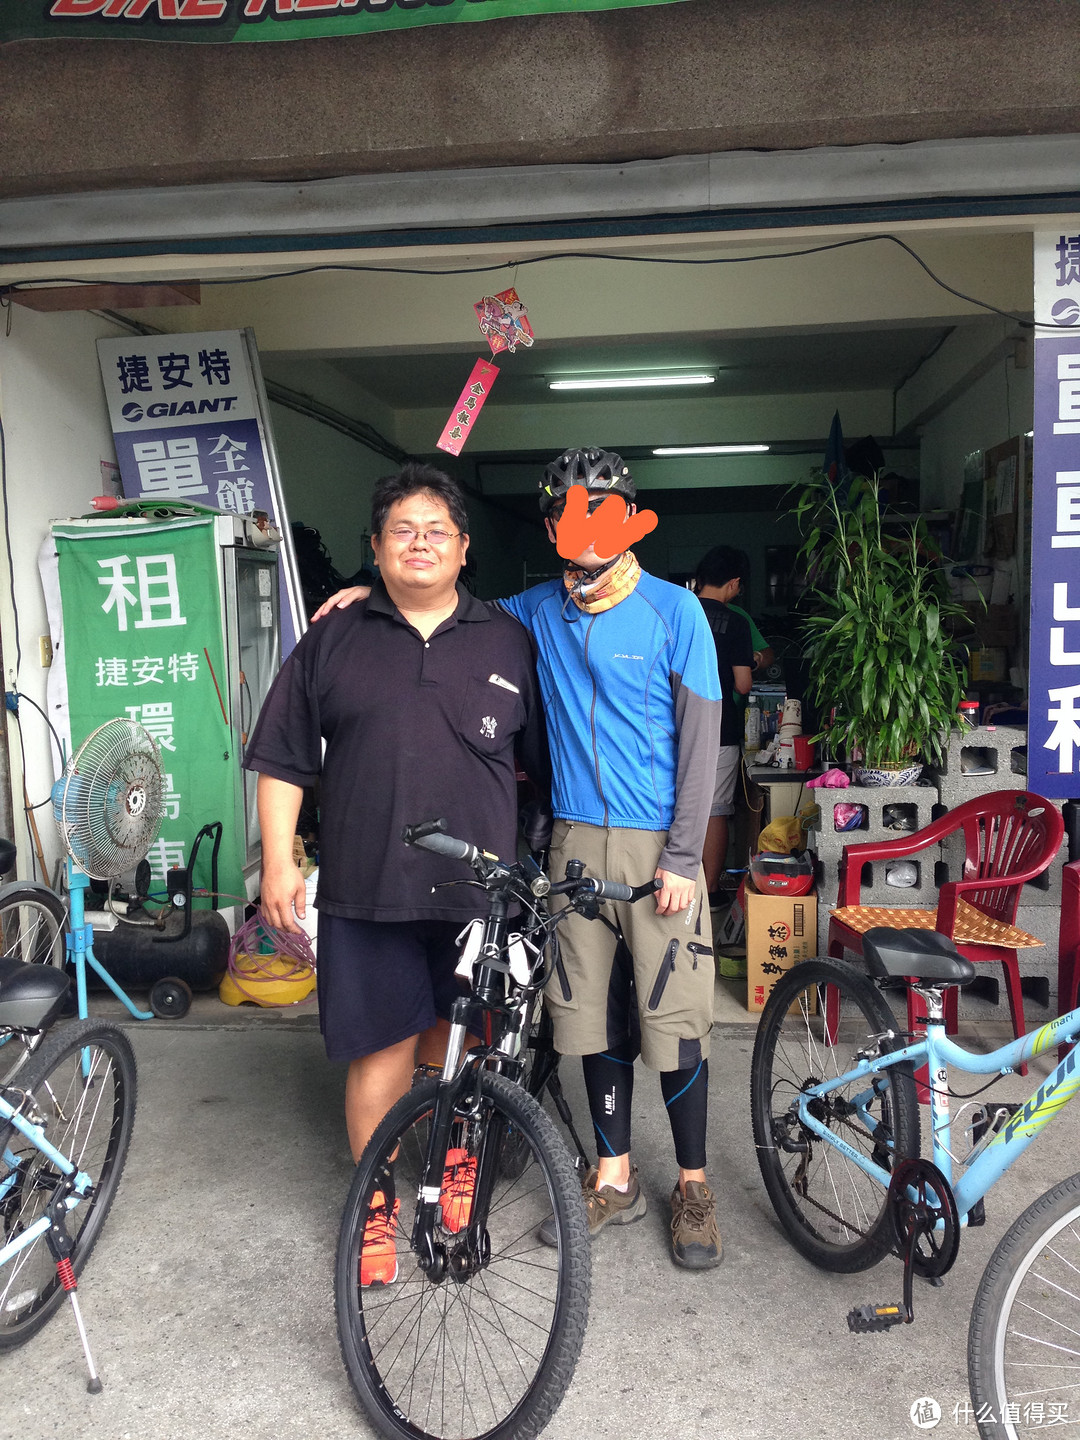 单车骑行环台湾岛指南